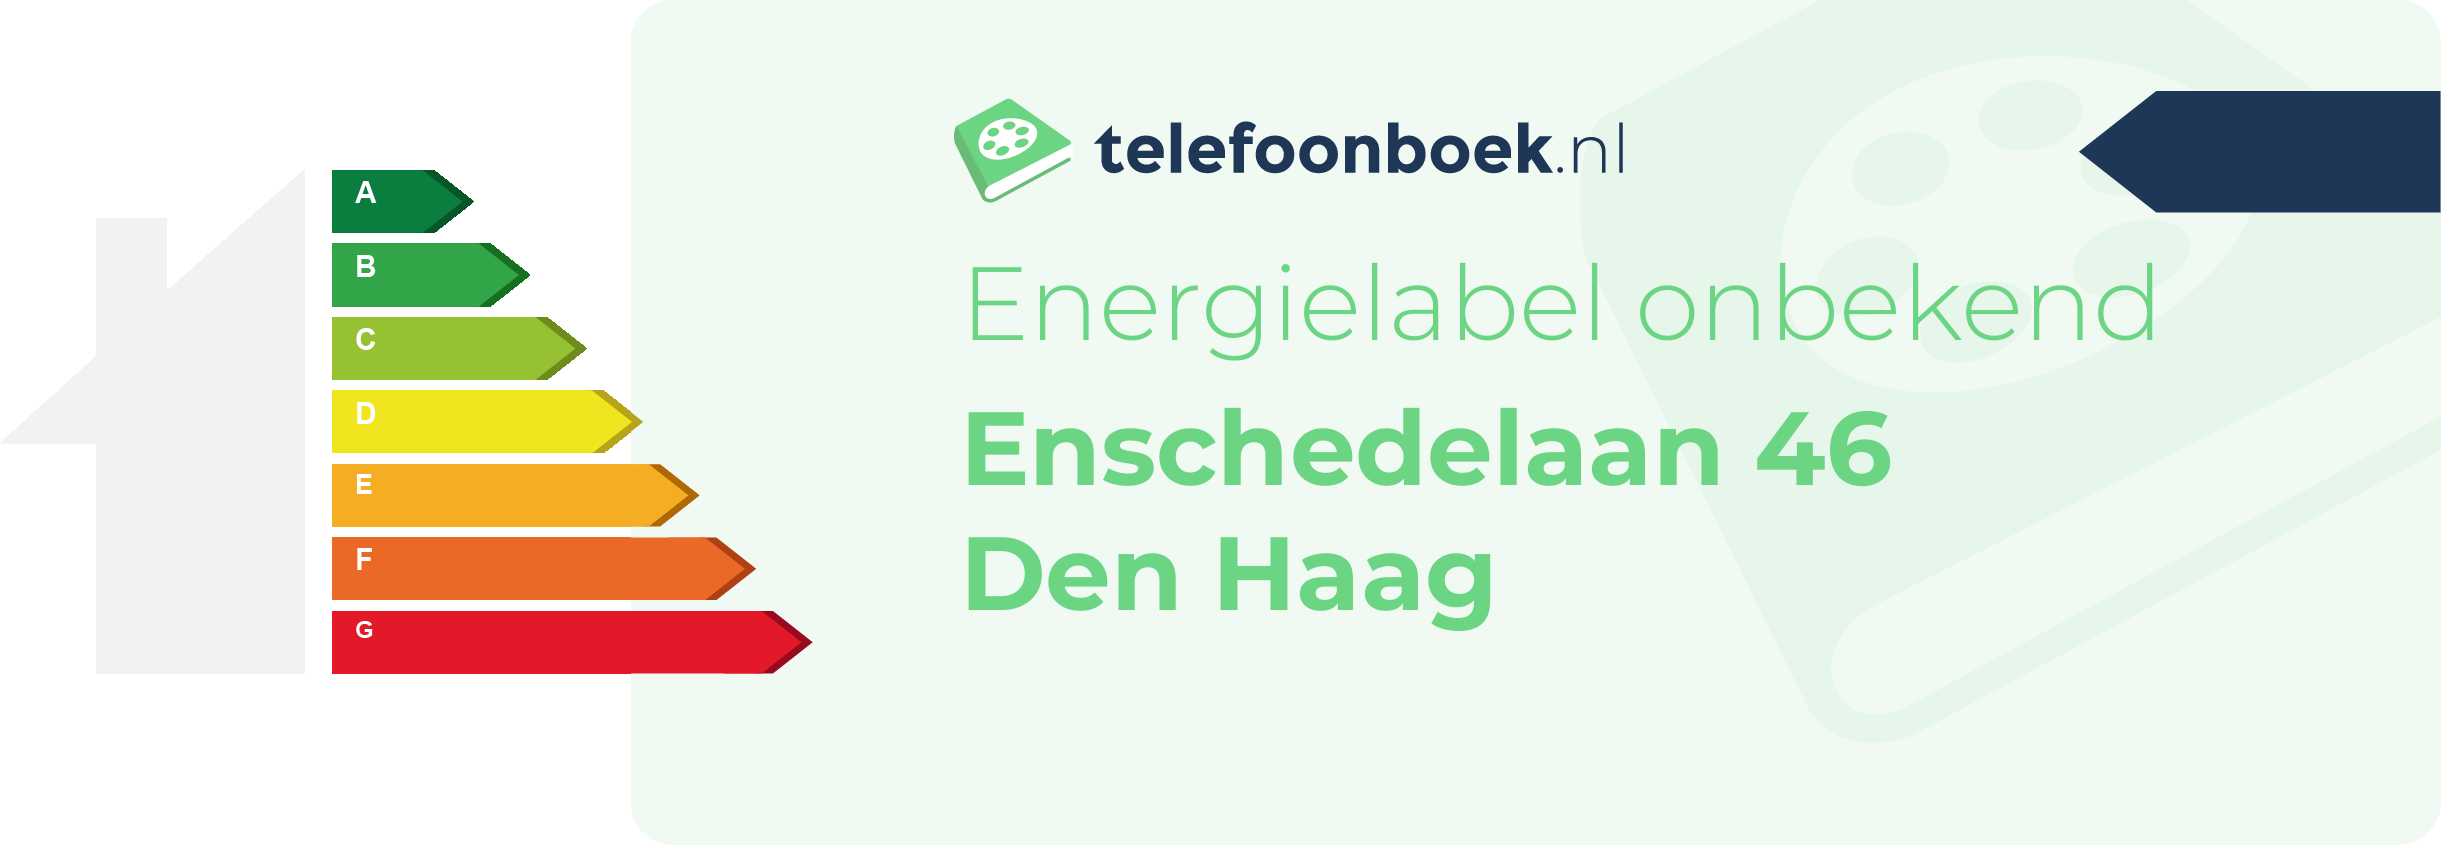 Energielabel Enschedelaan 46 Den Haag